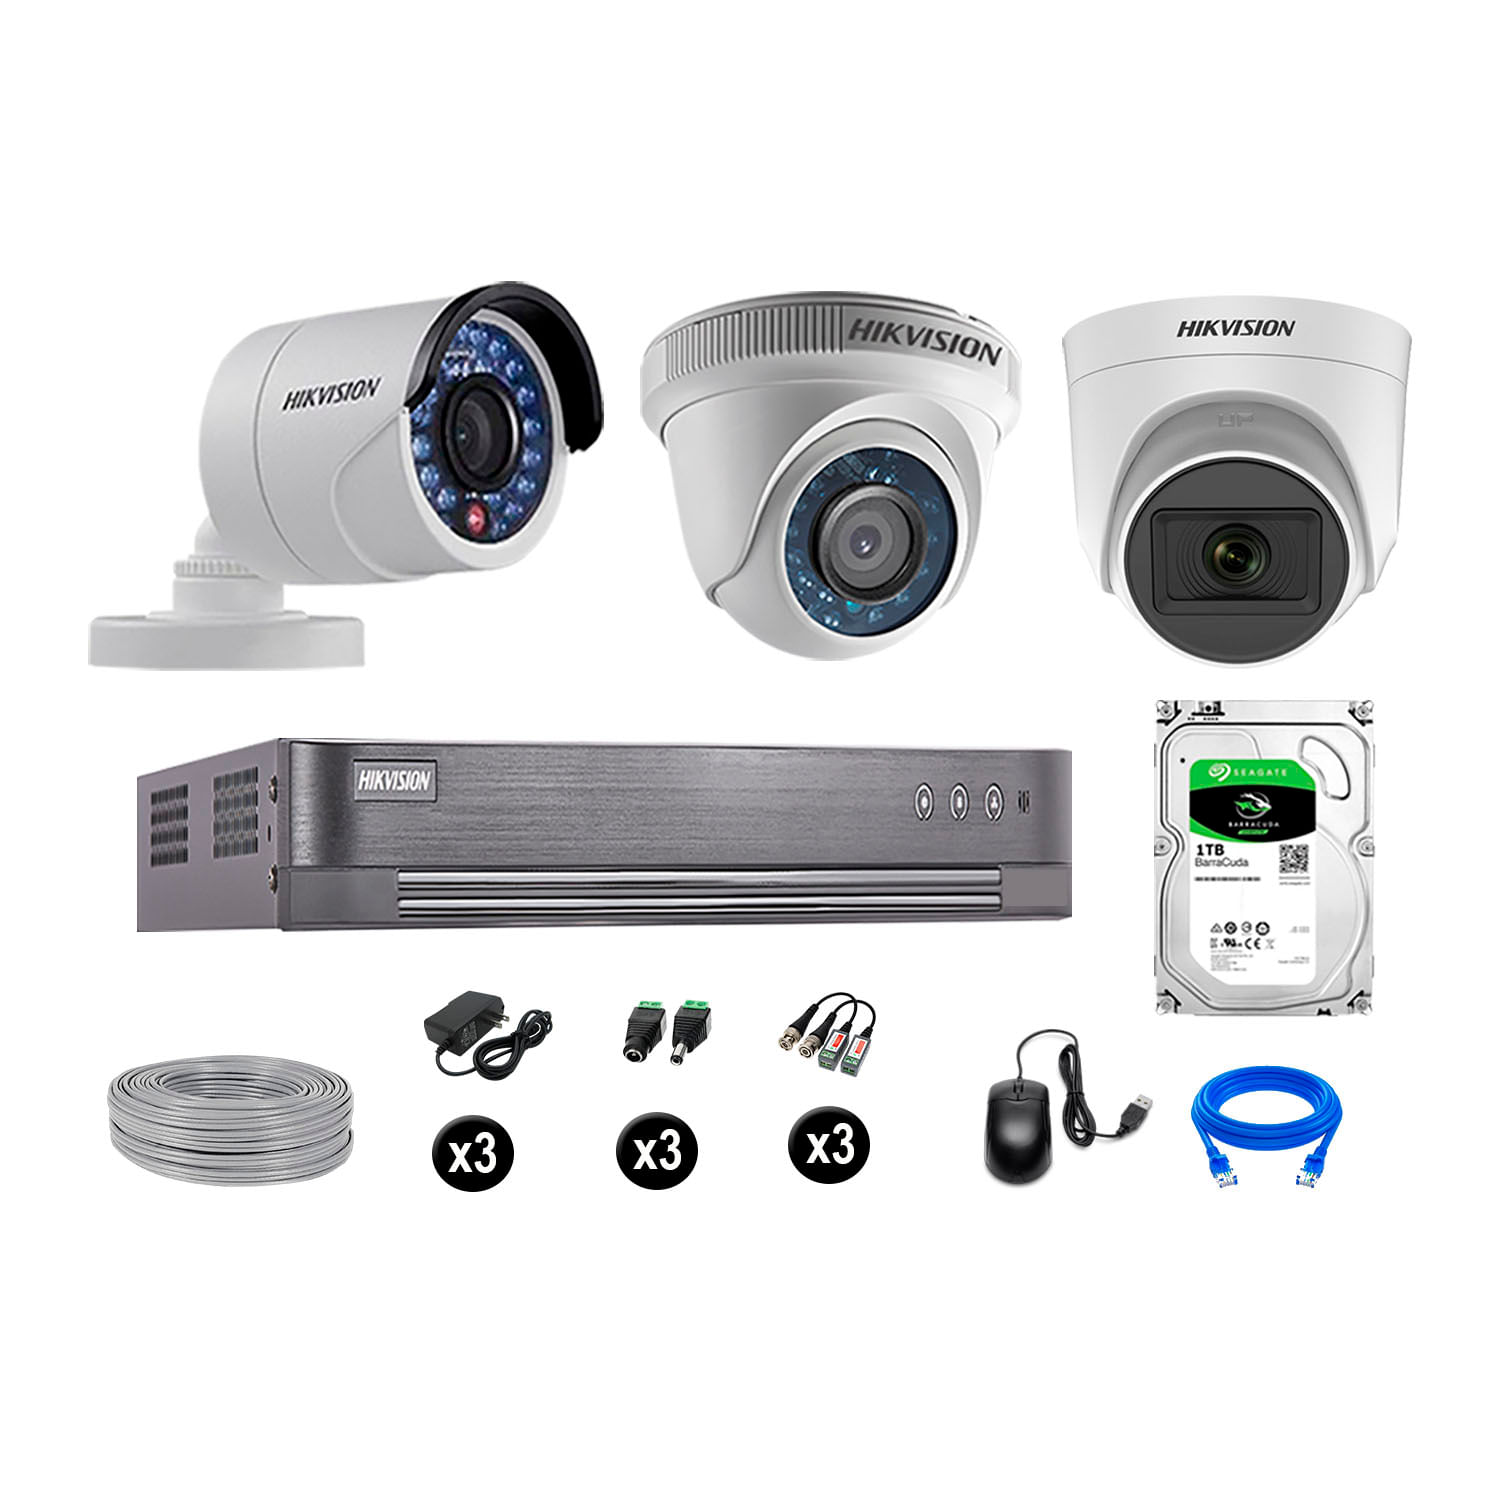 Cámaras de Seguridad Hikvision Kit 3 Vigilancia Hd 720P 1Tb 1 Cámara con Audio Completo